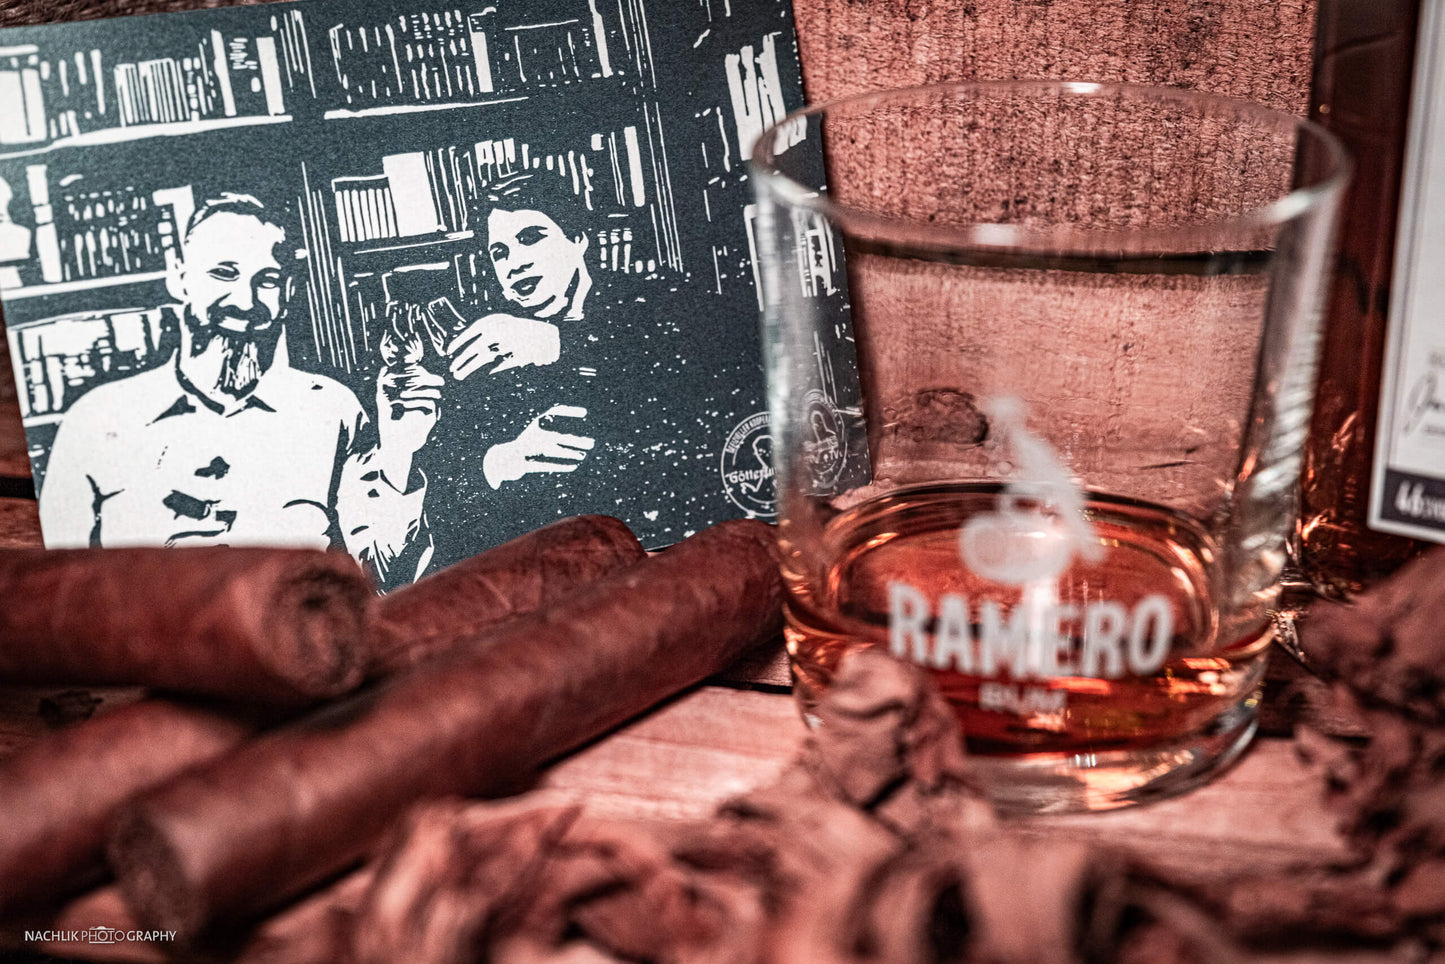 
                  
                    Ramero Cigar Rum für Götterfunken TV Genuss für Geist und Gaumen  Batch 1 (limitiert)
                  
                